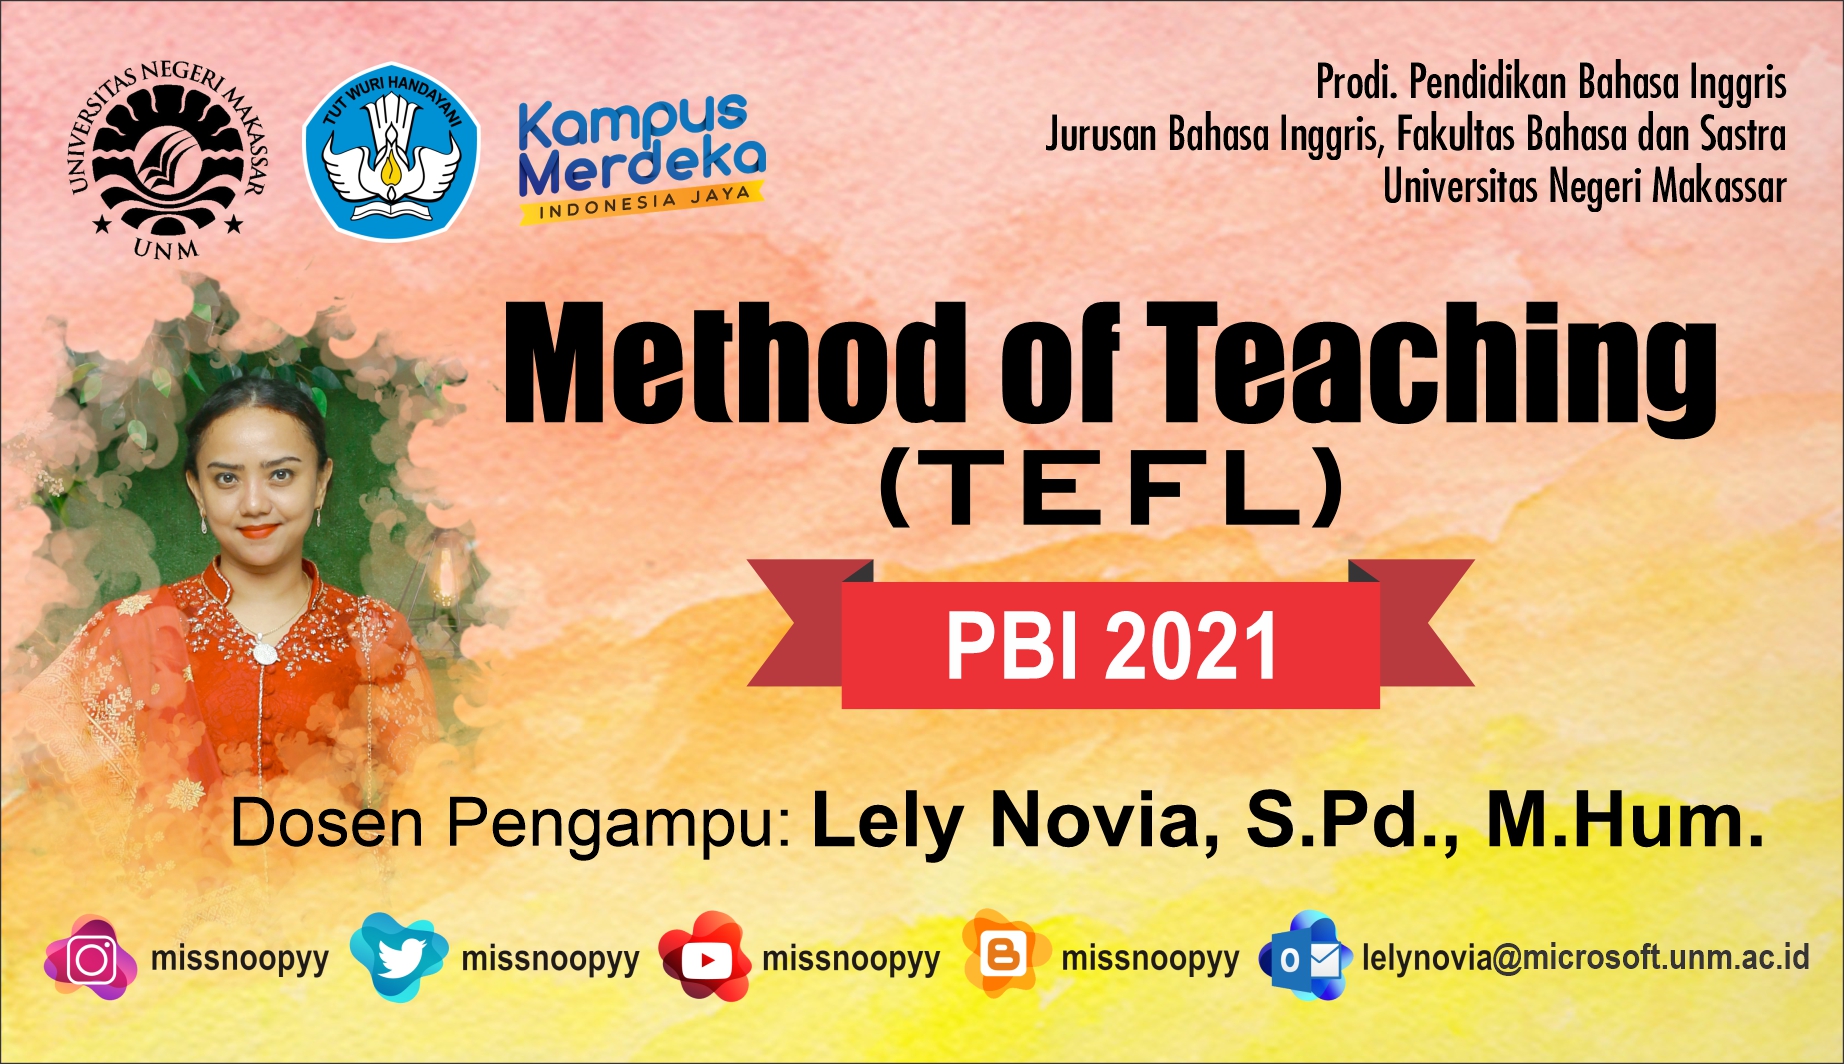 2023 Genap - METHOD OF TEACHING (TEFL)